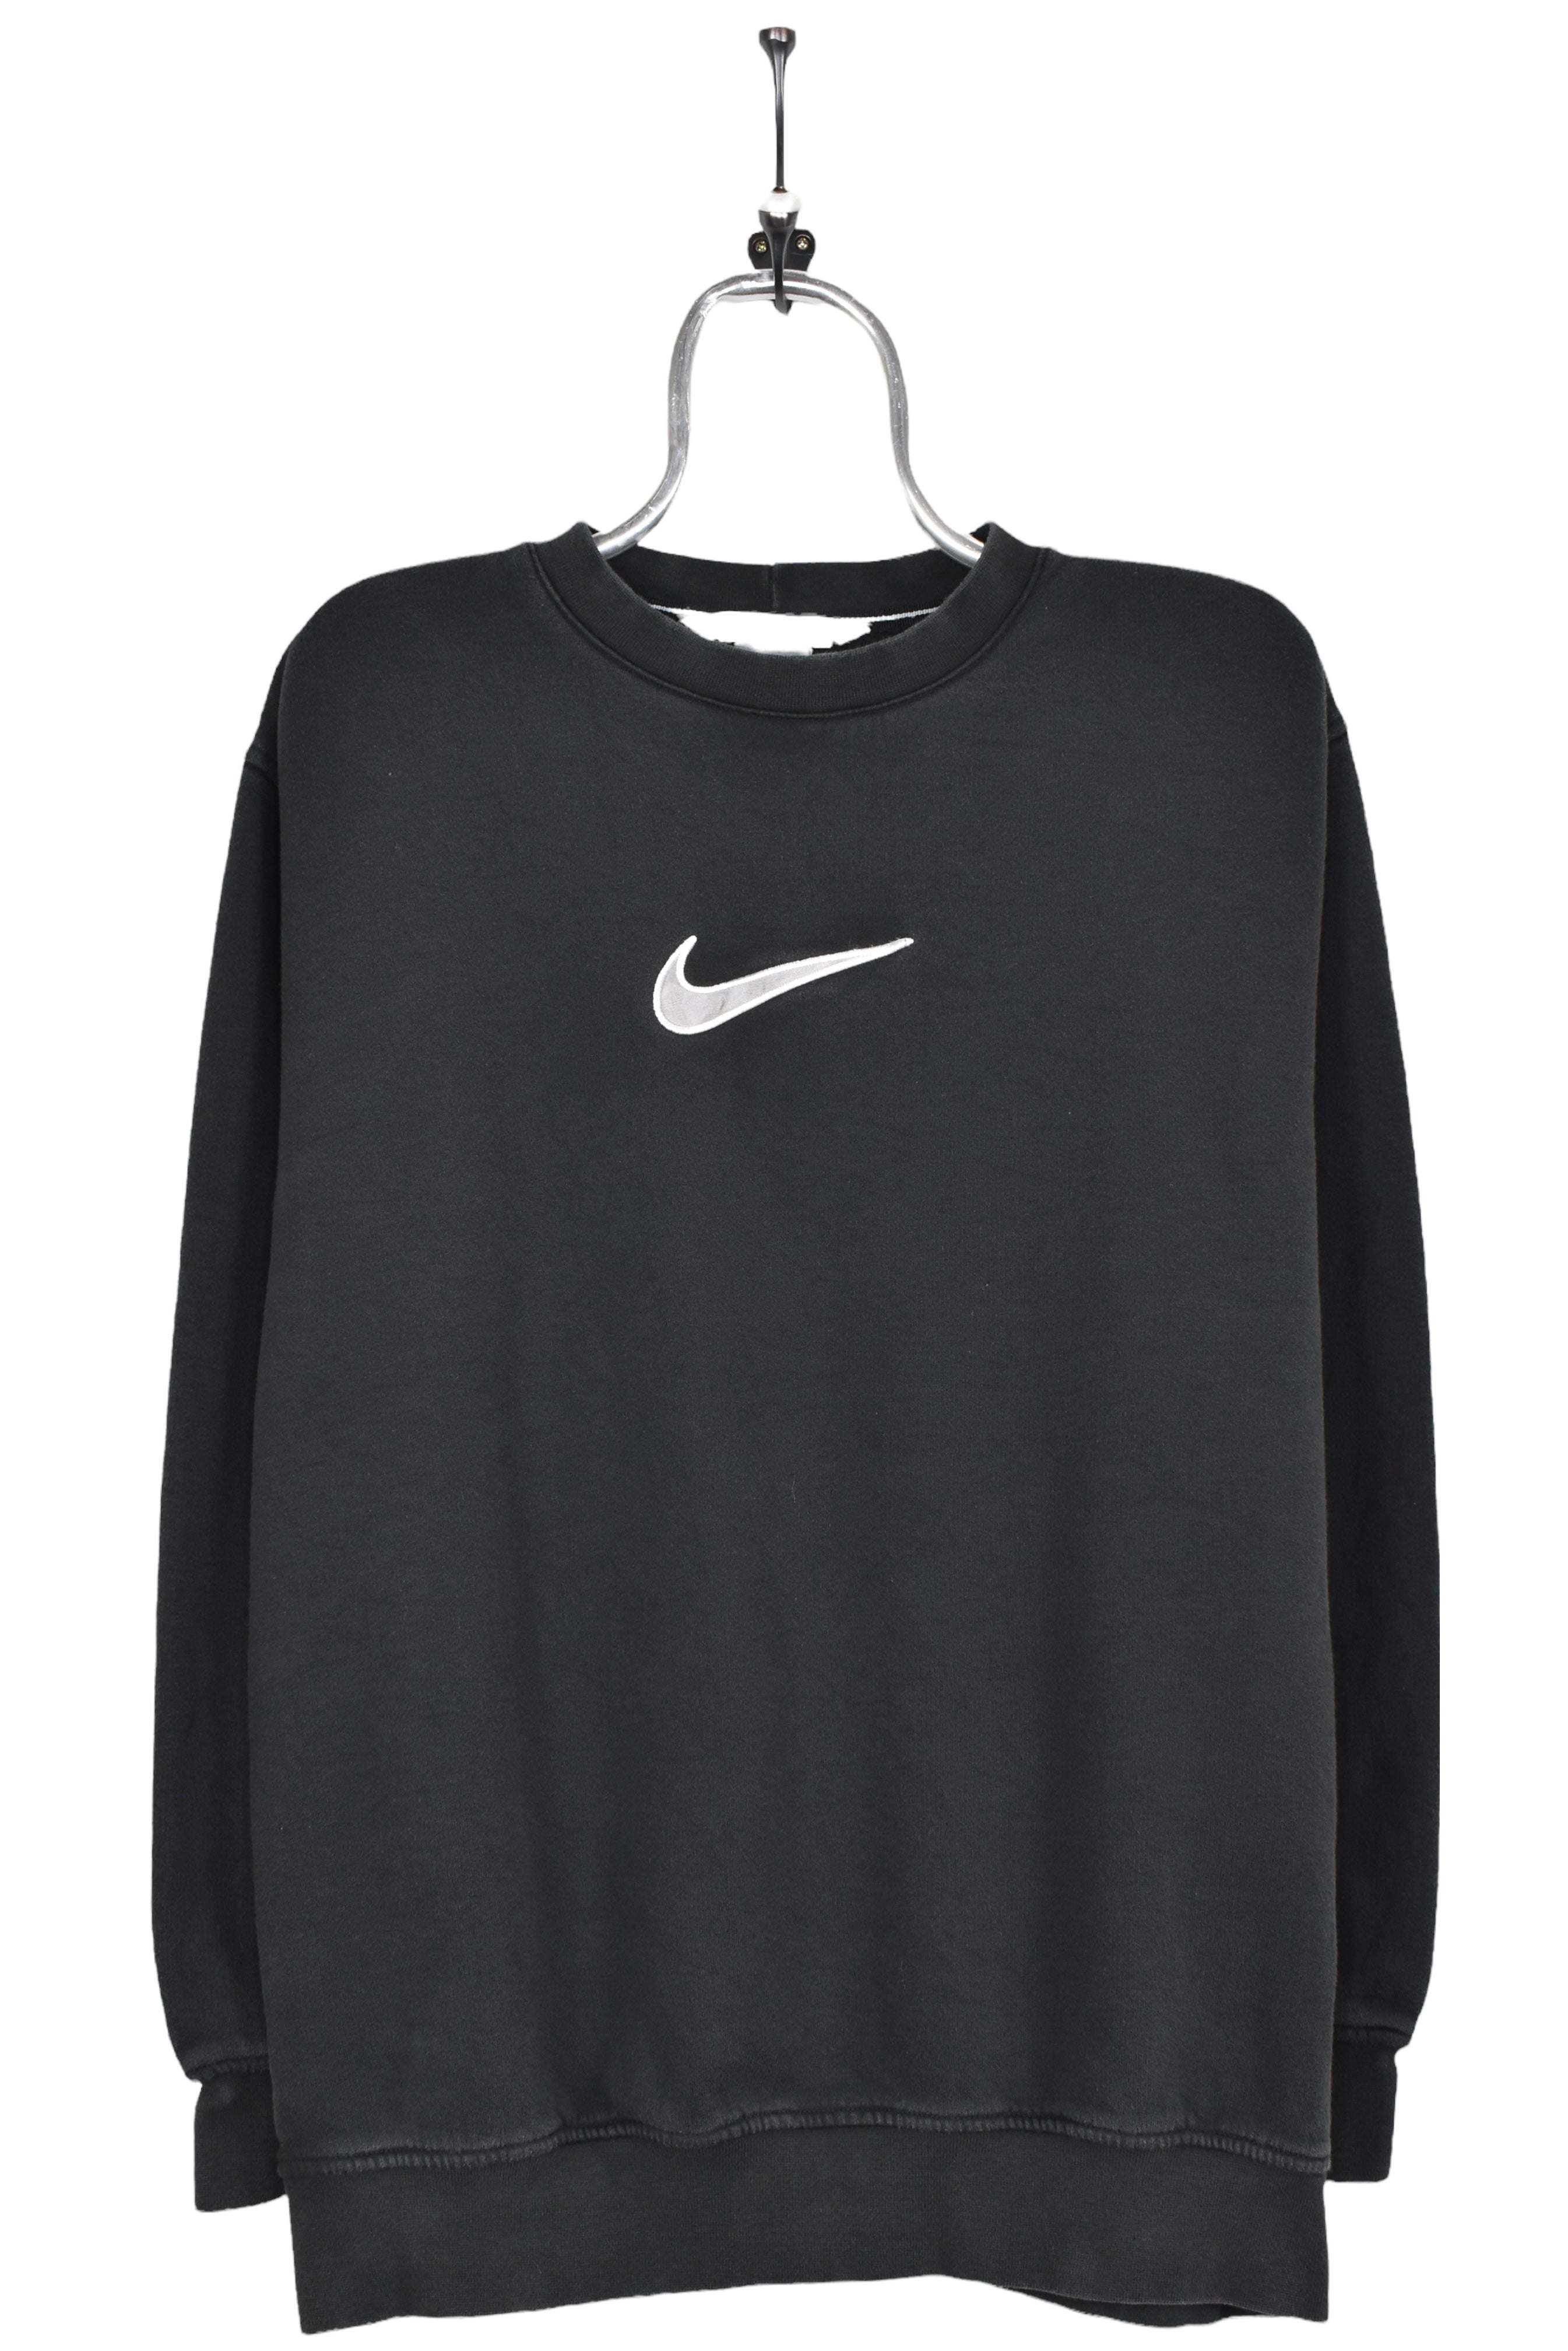 Vintage Nike sweatshirt, centre embroidered crewneck AU Large